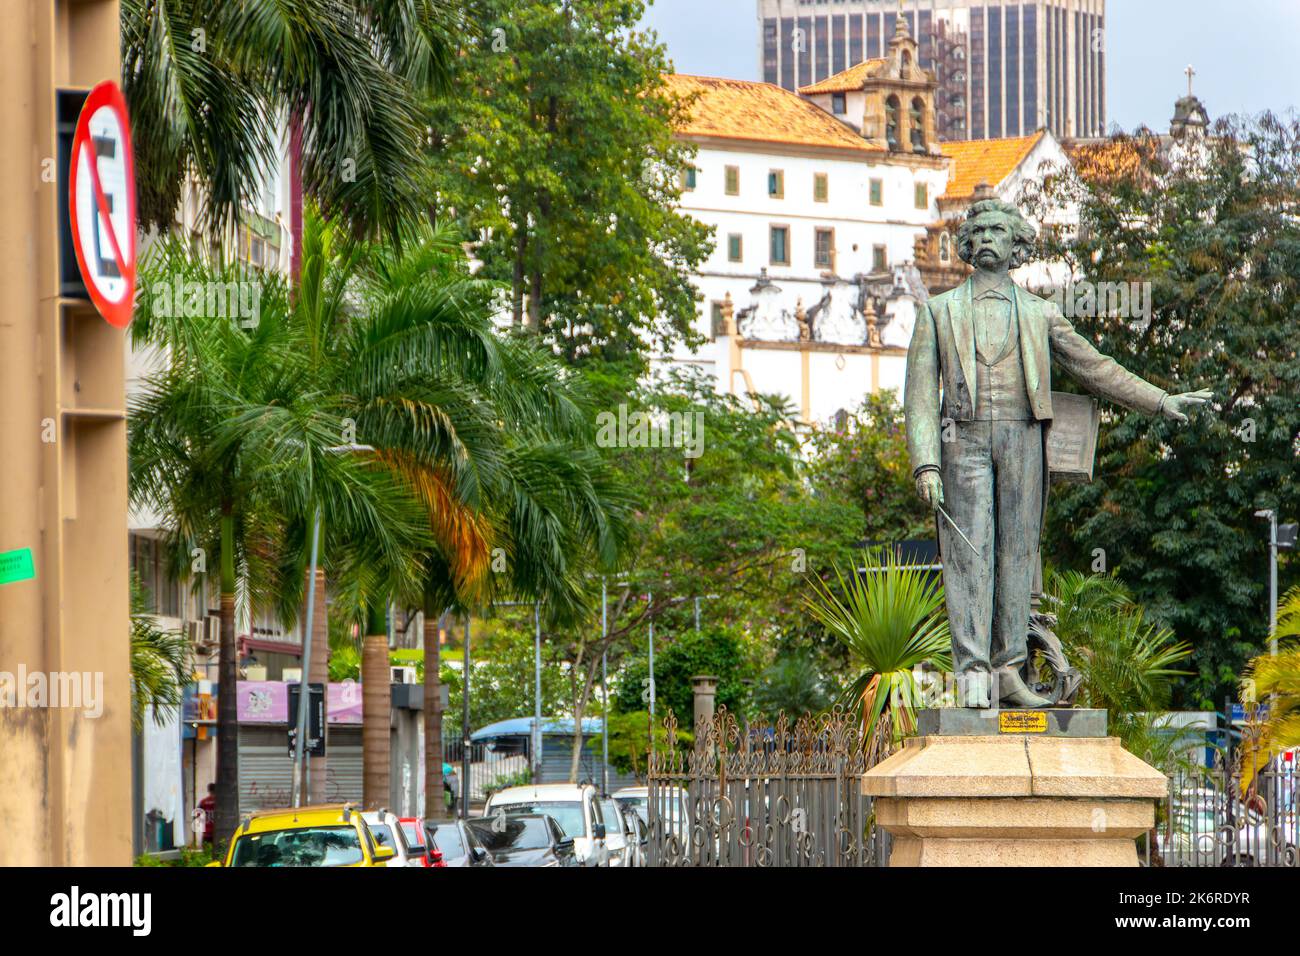 statue of Carlos Gomes in downtown Rio de Janeiro, Brazil - September 11, 2022: Statue of Carlos Gomes at Teatro Municipal in downtown Rio de Janeiro. Stock Photo